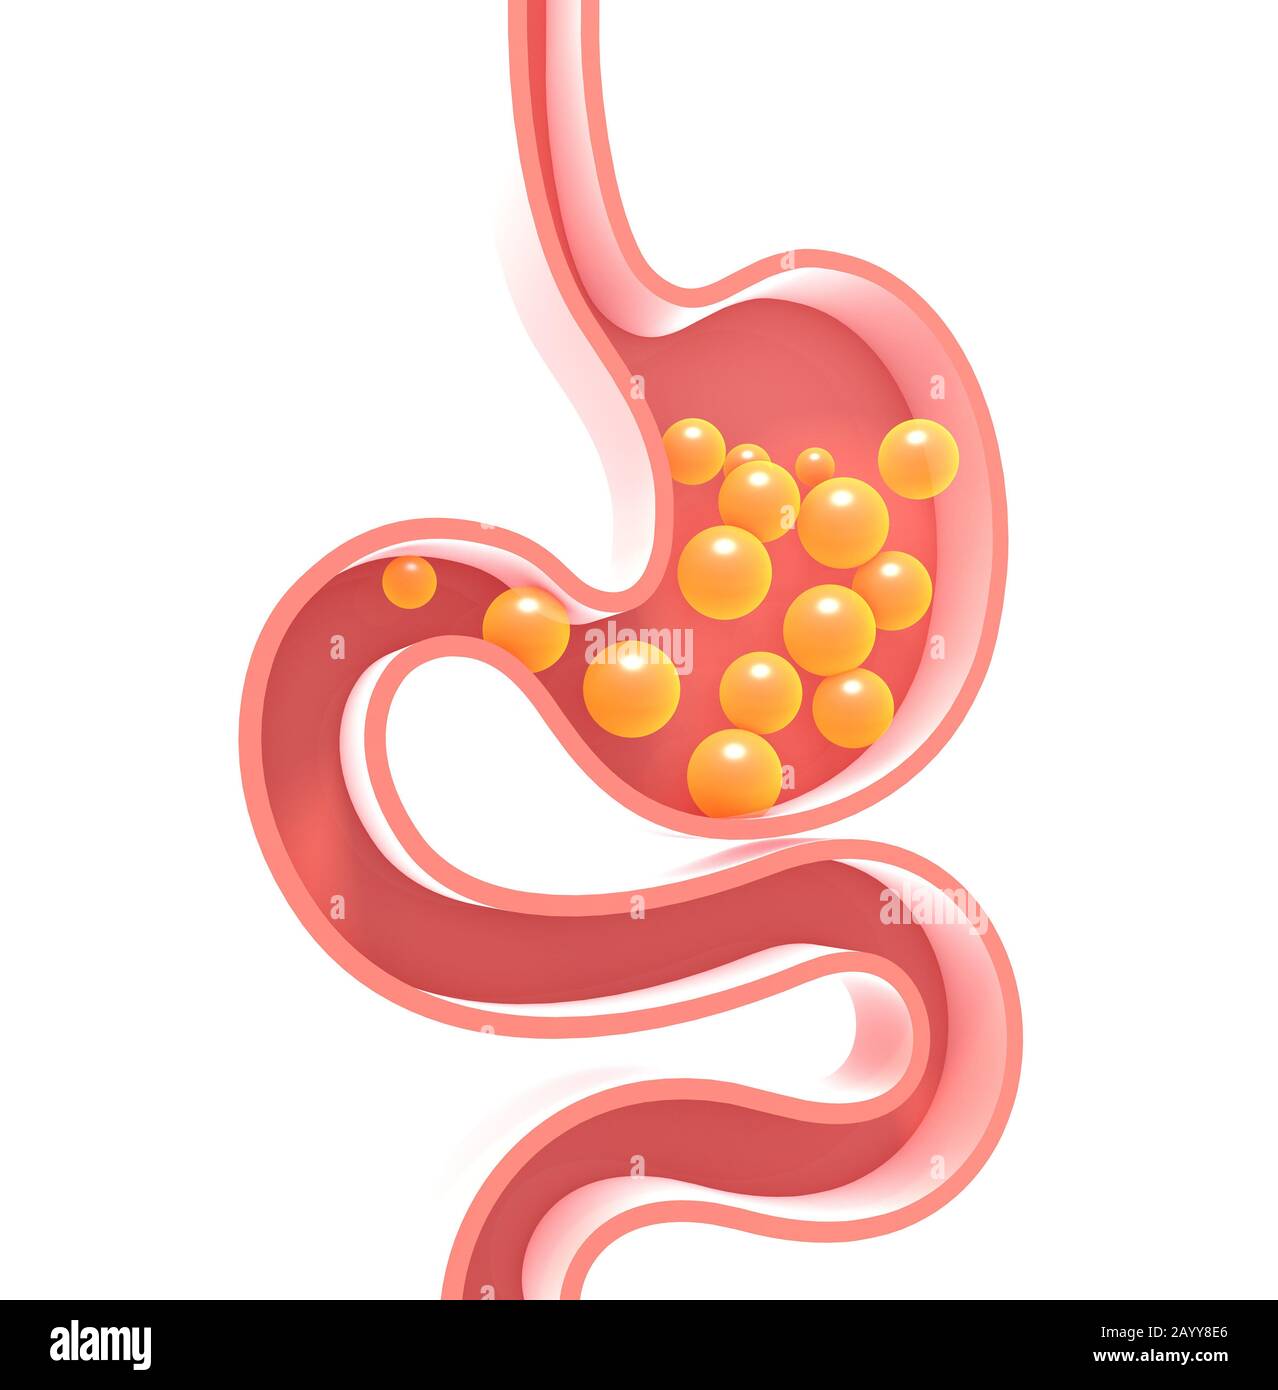 3D illustrazione dello schema interno dello stomaco umano con gas. Figura piatta vuota, silhouette isolata su sfondo bianco con colori vivaci Foto Stock